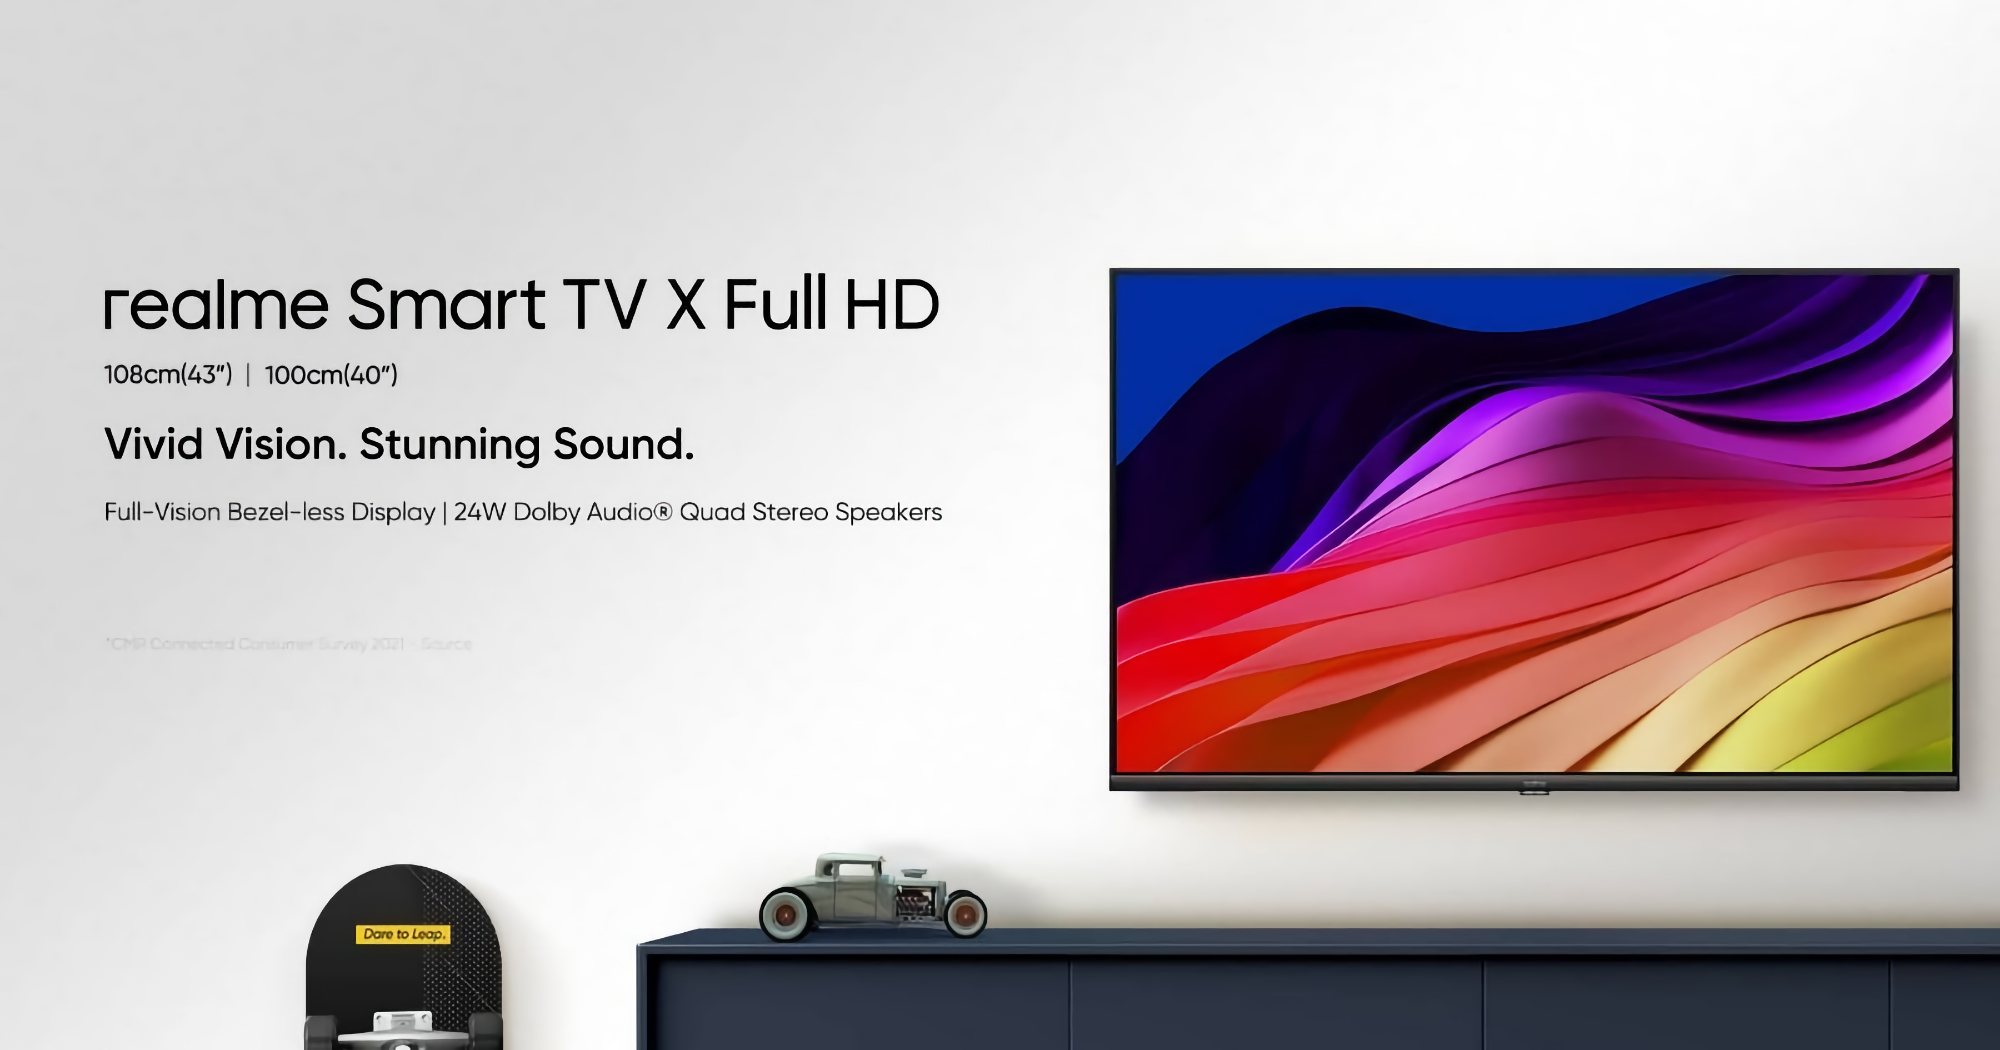 realme si prepara a rilasciare una linea di Smart TV X Full HD TV con schermi fino a 43″, chip MediaTek e altoparlanti da 24W